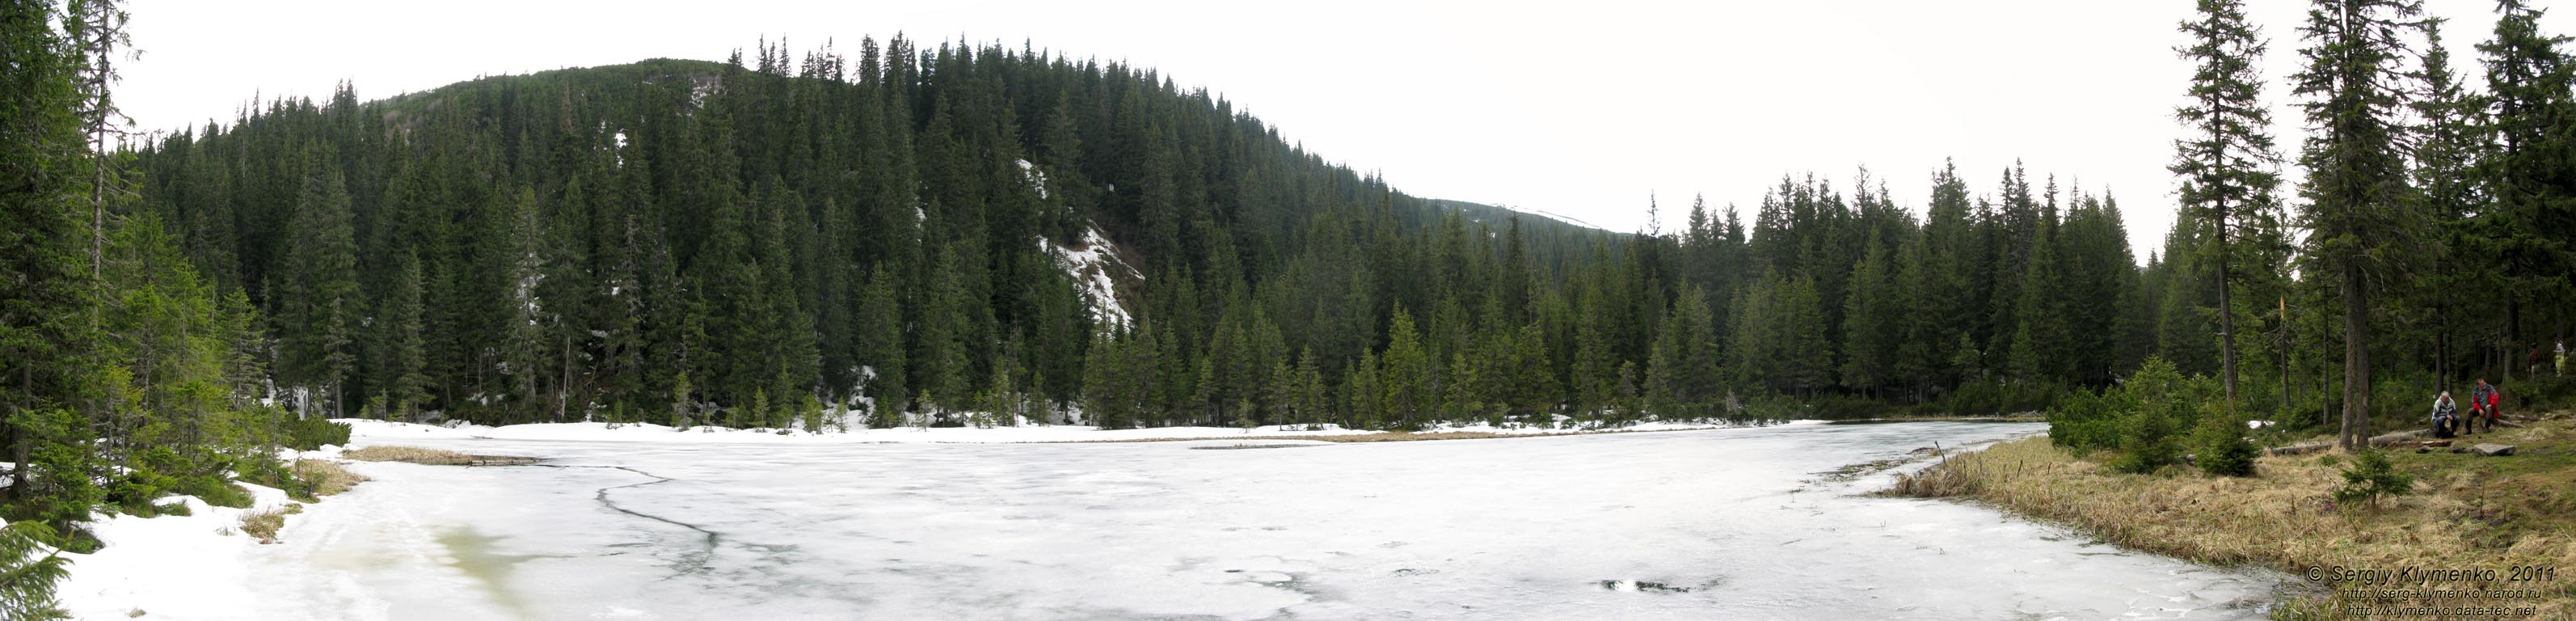 Фото Карпат. Озеро Маричейка (48°00'00"N, 24°40'16"E). Панорама ~120°.